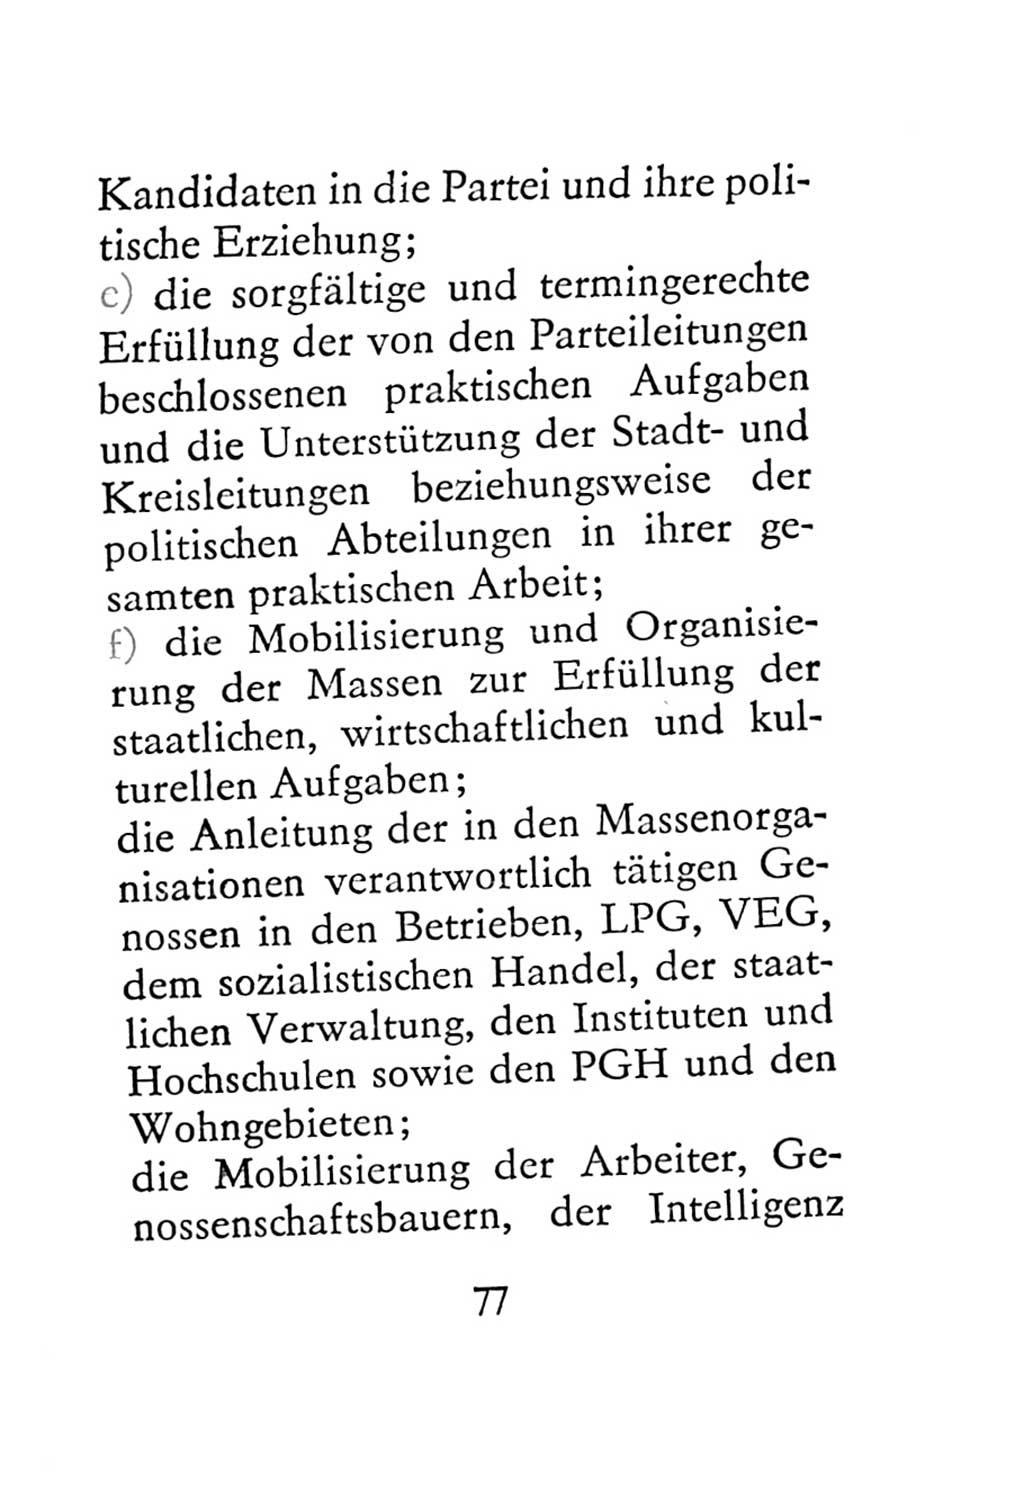 Statut der Sozialistischen Einheitspartei Deutschlands (SED) 1967, Seite 77 (St. SED DDR 1967, S. 77)